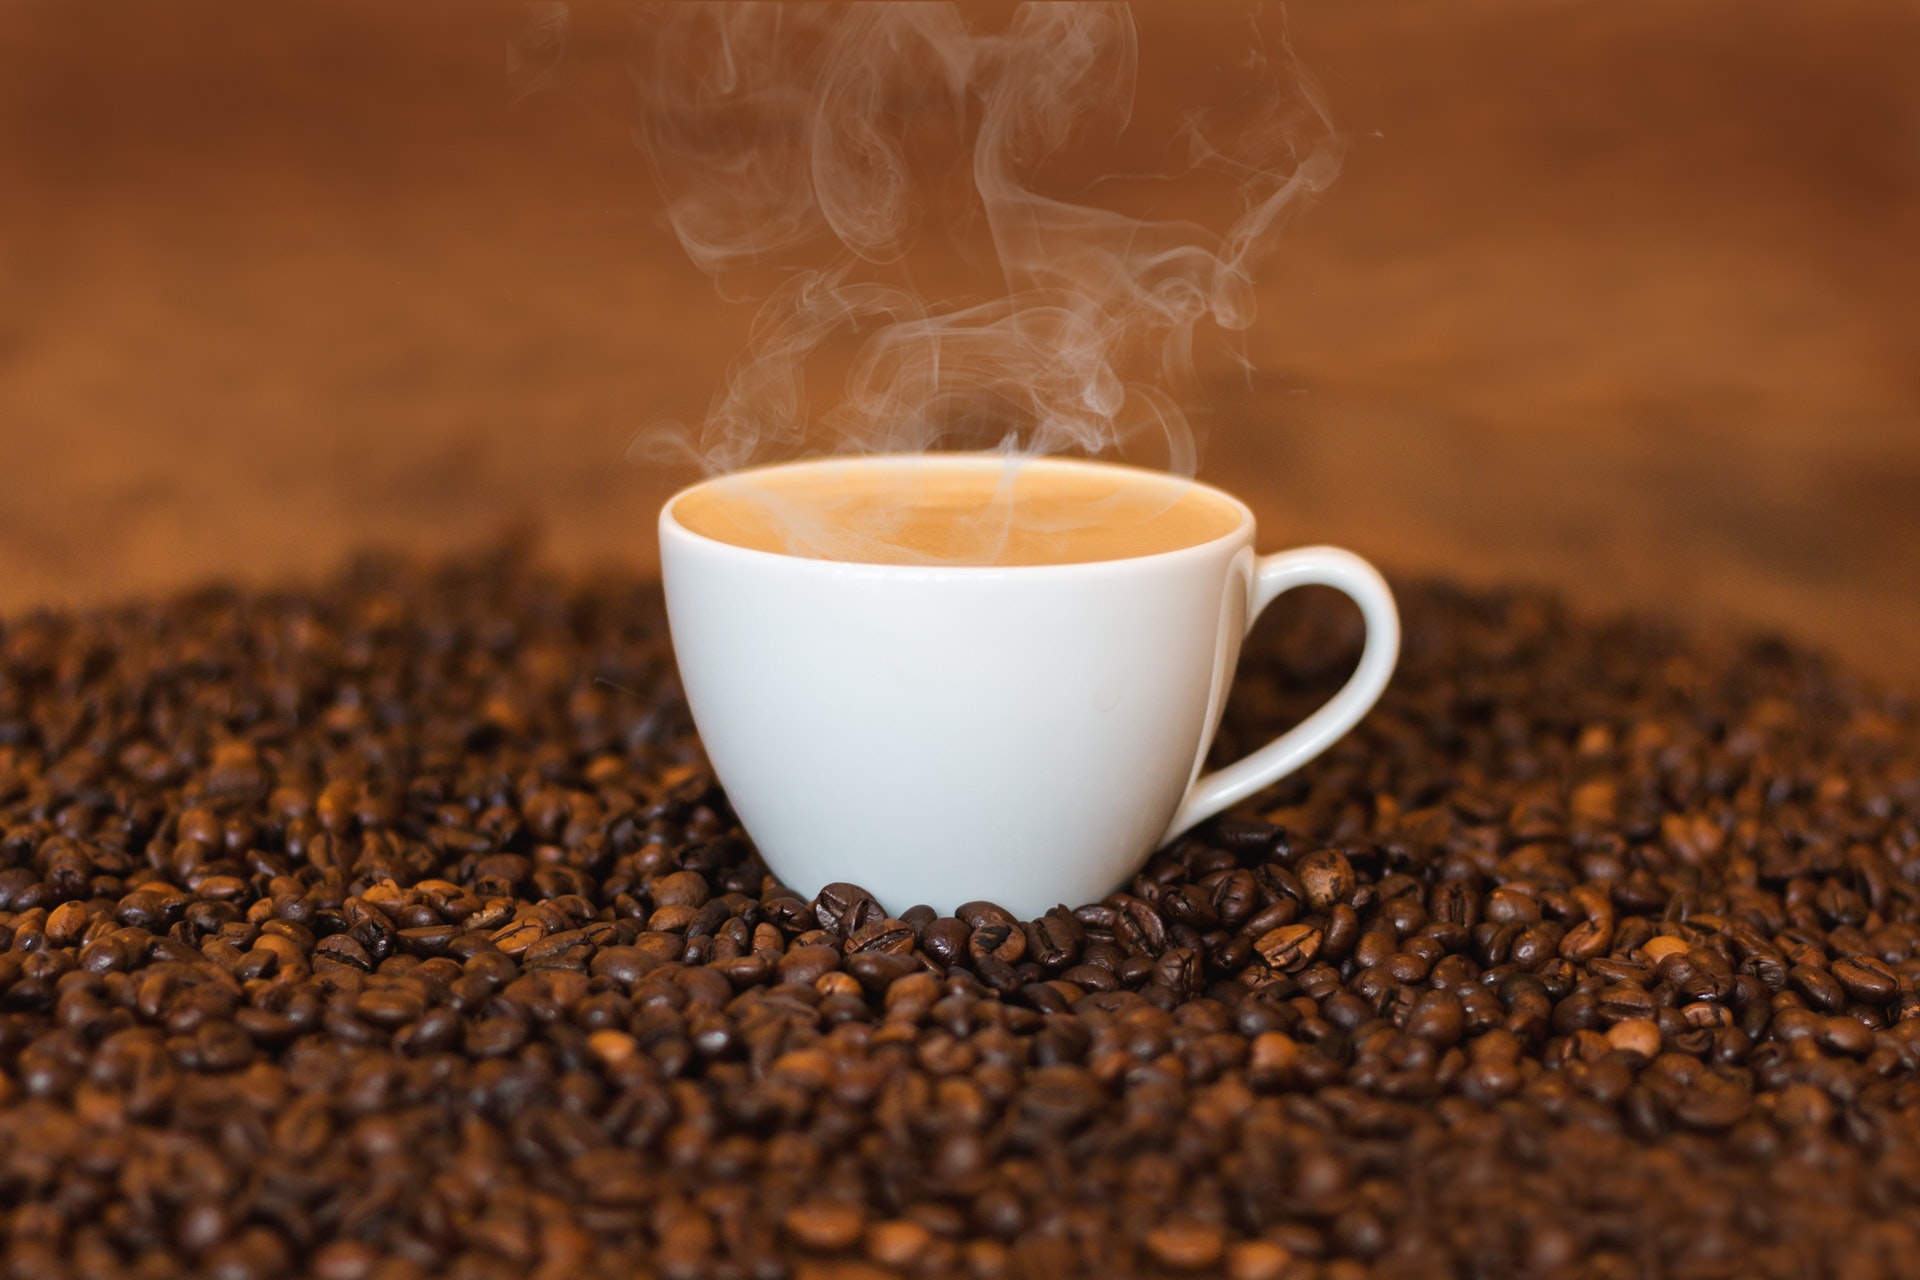 cup of coffee on coffeebearns